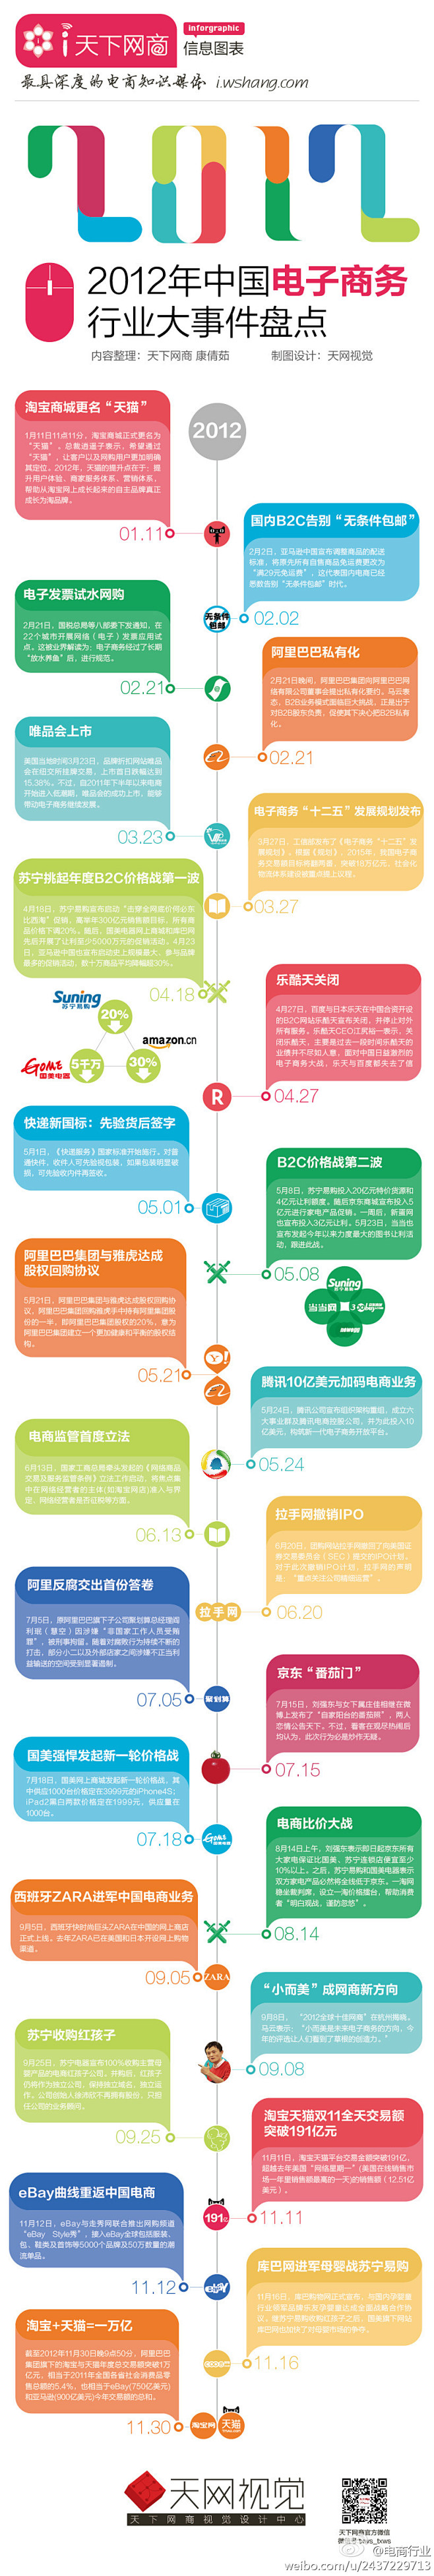 2012年中国电子商务行业大事件盘点